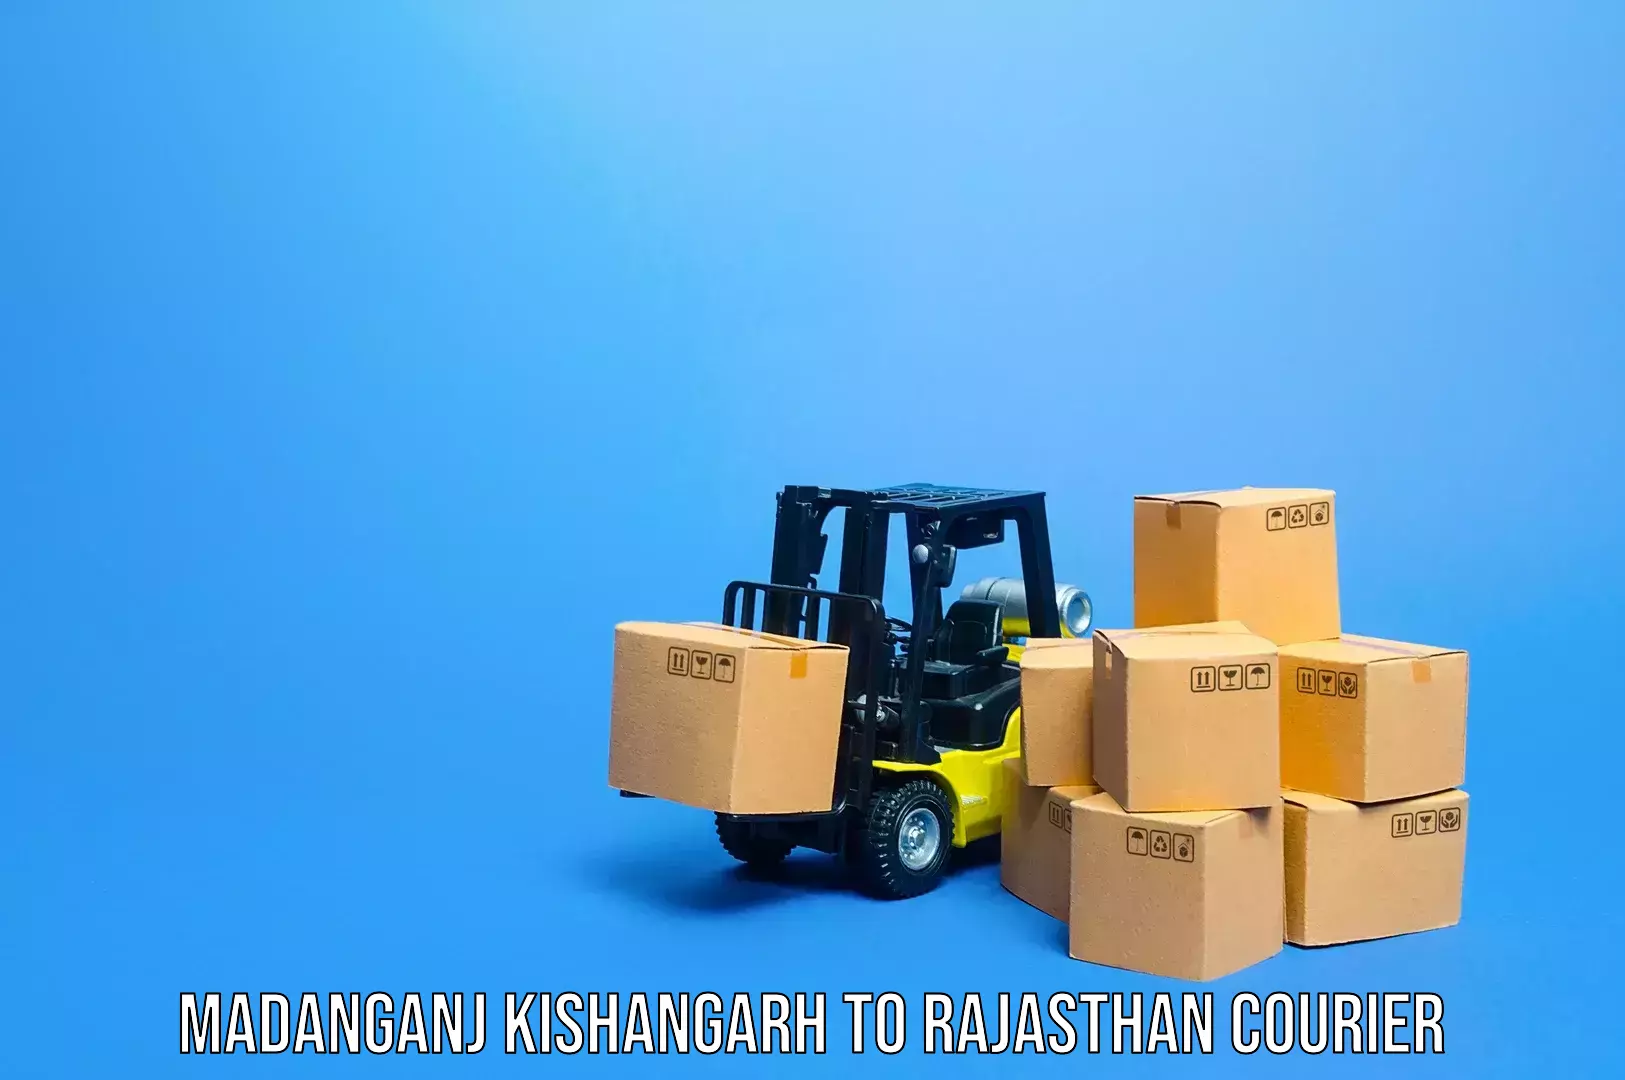 Baggage transport scheduler Madanganj Kishangarh to Dausa